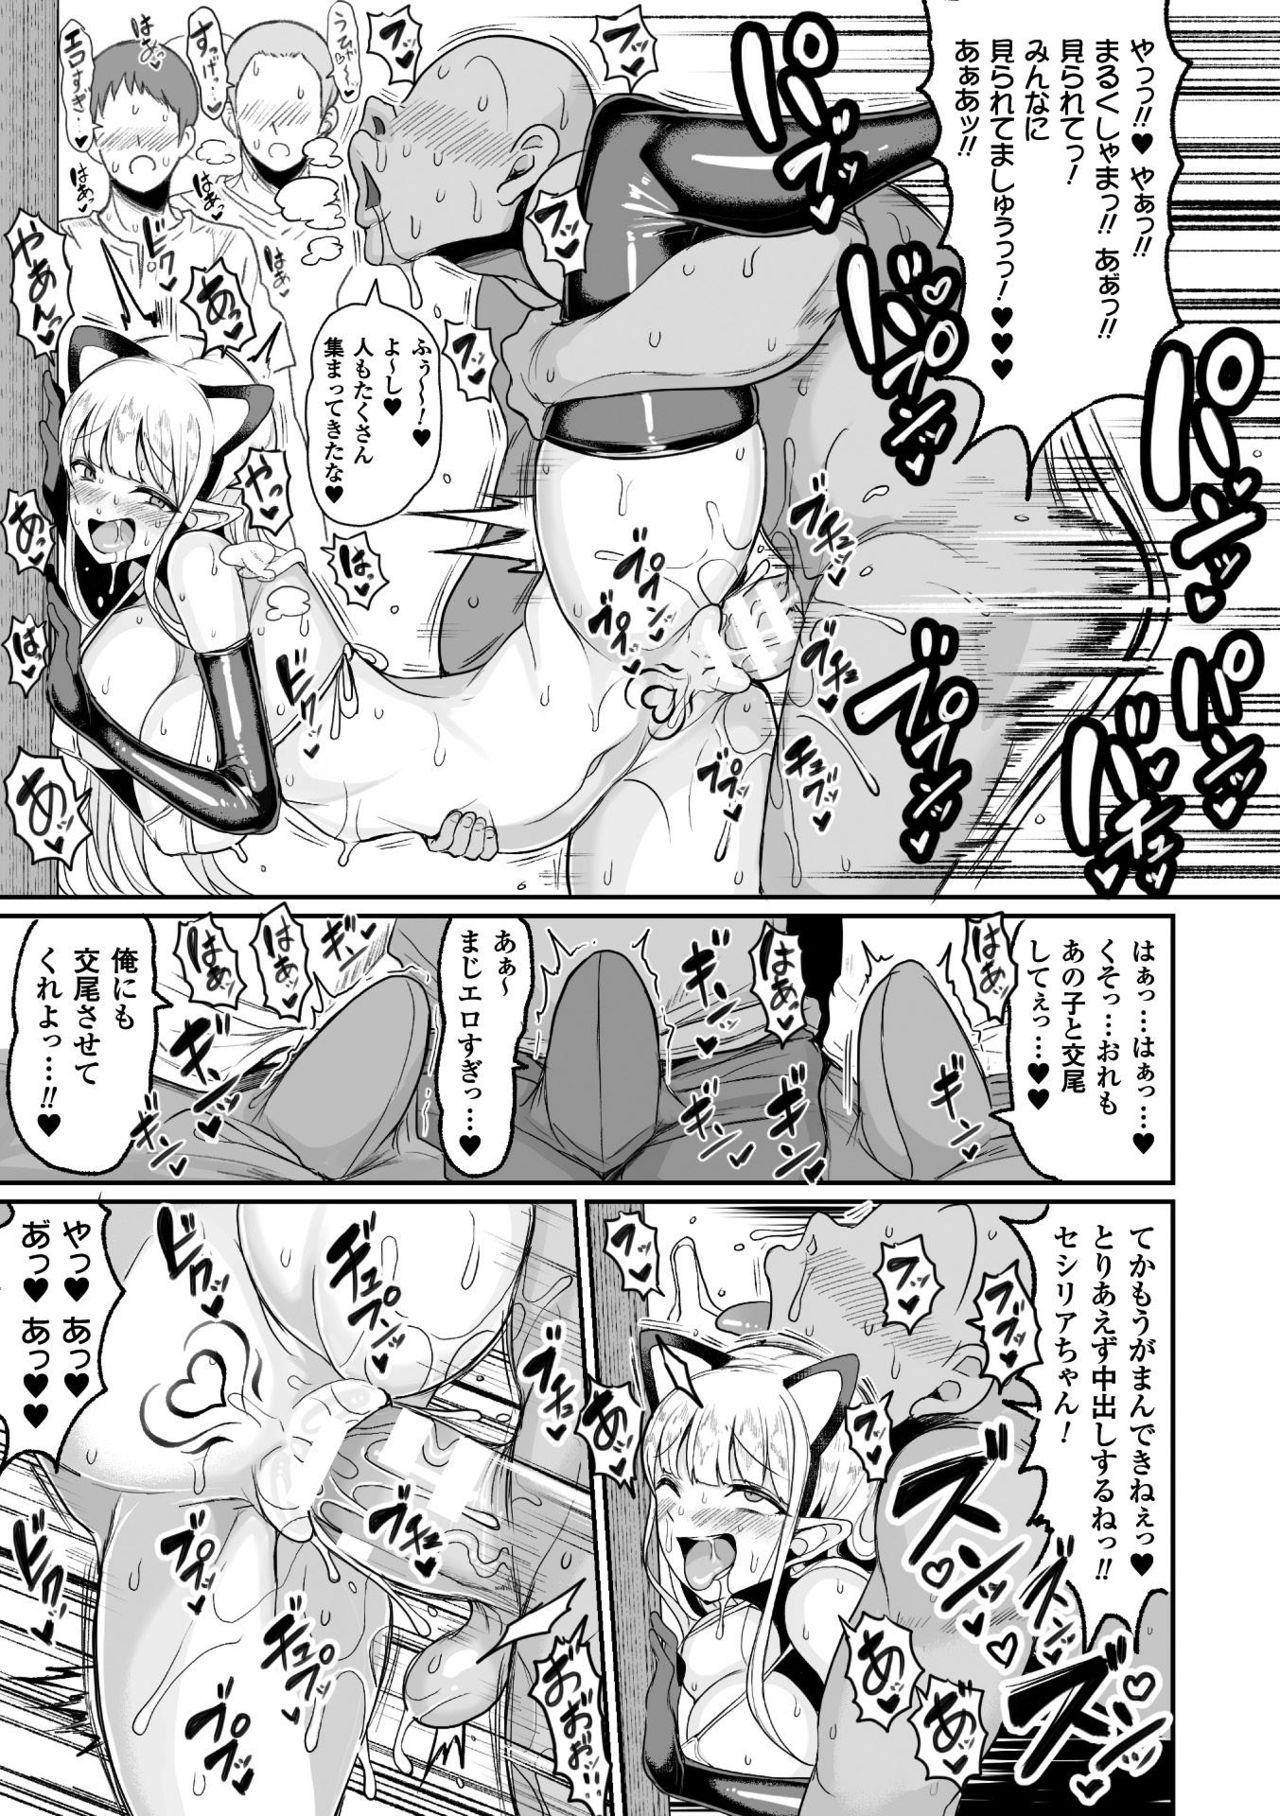 Private Tanetsuke Colosseum! Episode 2 Anime - Page 7